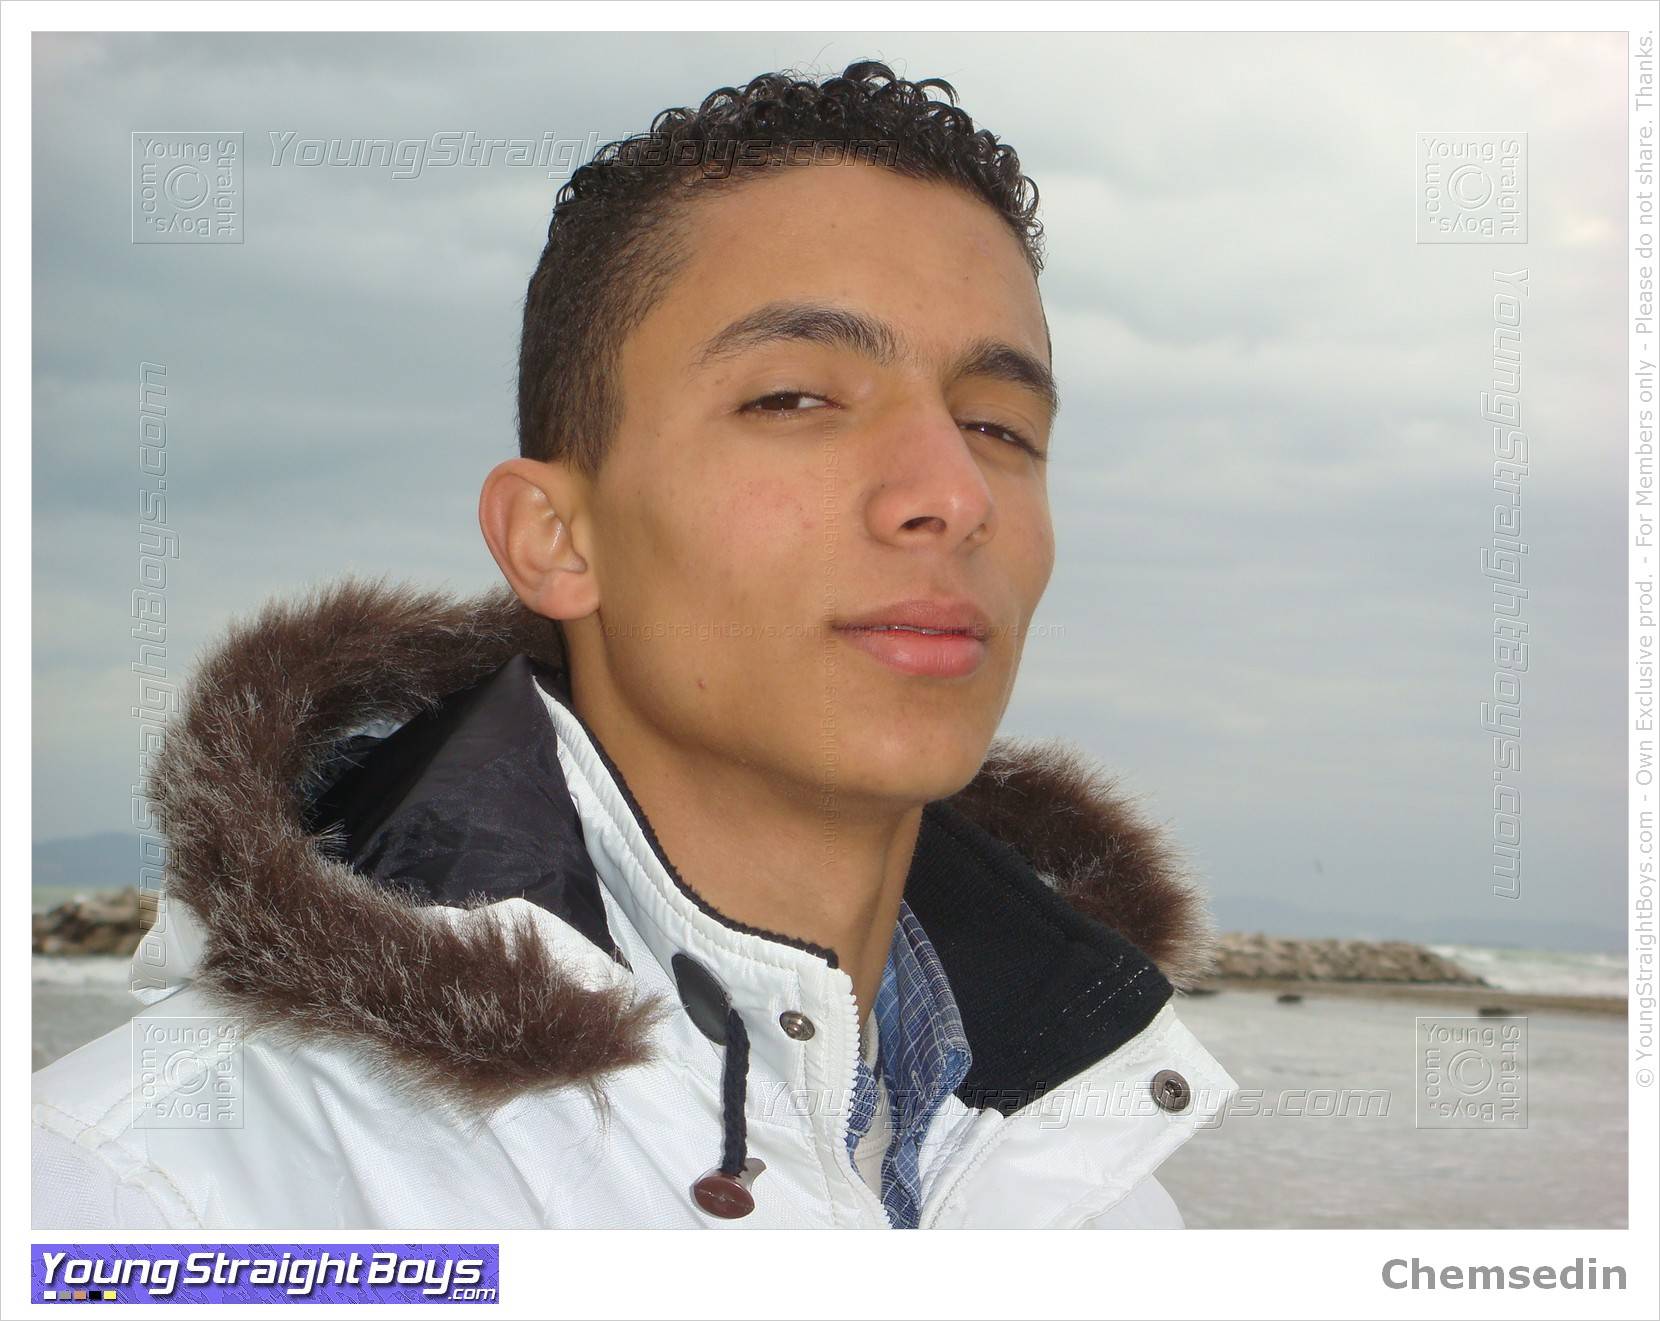 Chemsedin op het strand, een knappe str8 jonge Arabische jongen die ik zou kunnen zuigen :-)